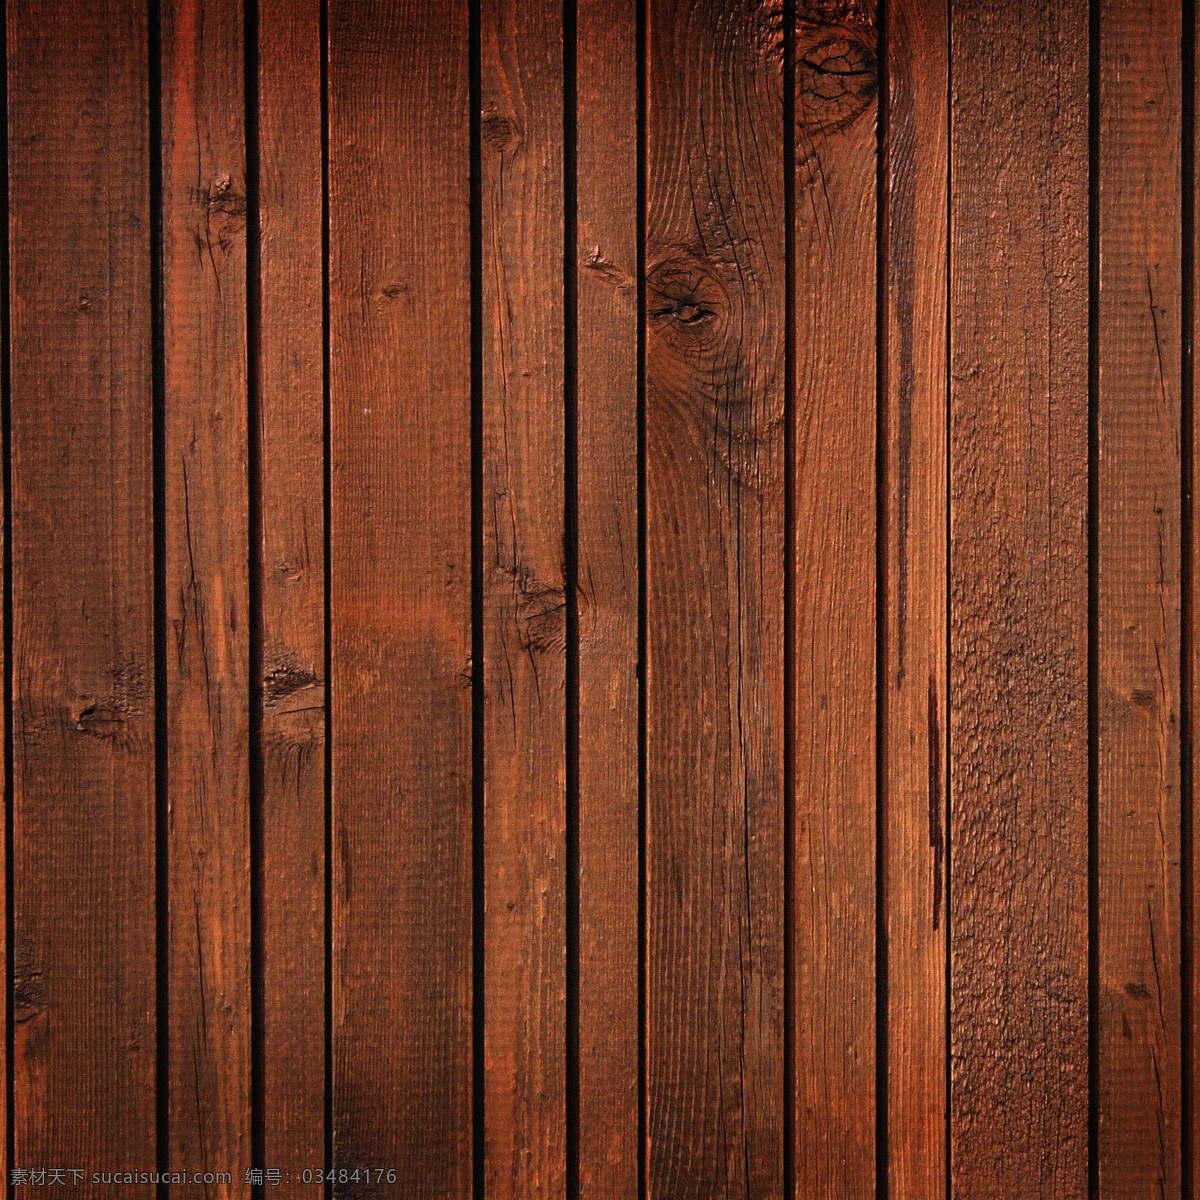 排列 整齐 棕红色 木板 条 高清 大图 木纹 木质 材质 贴图